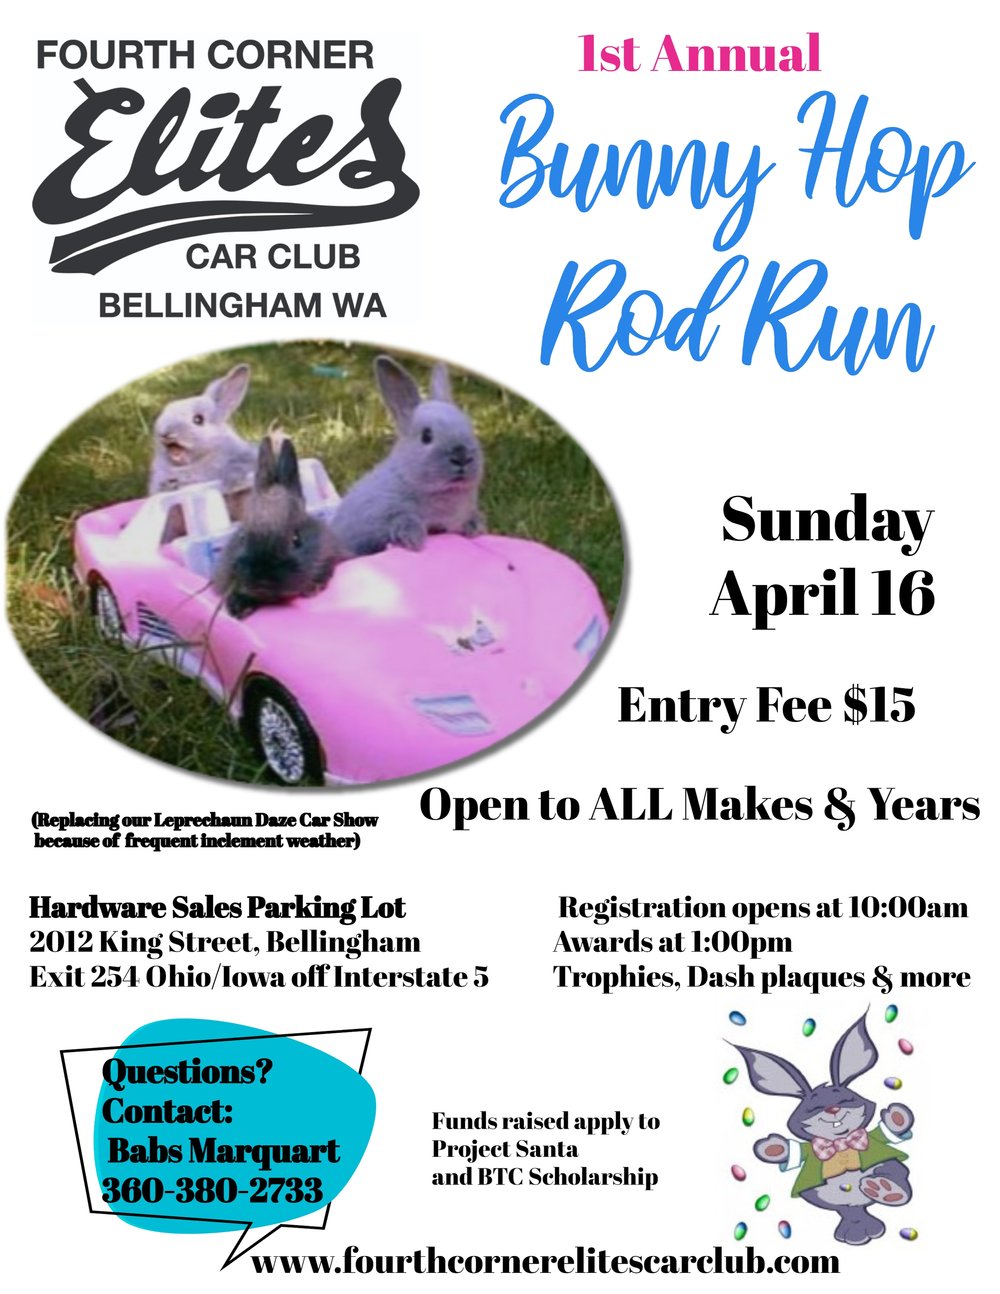 Bunny Hop Rod Run